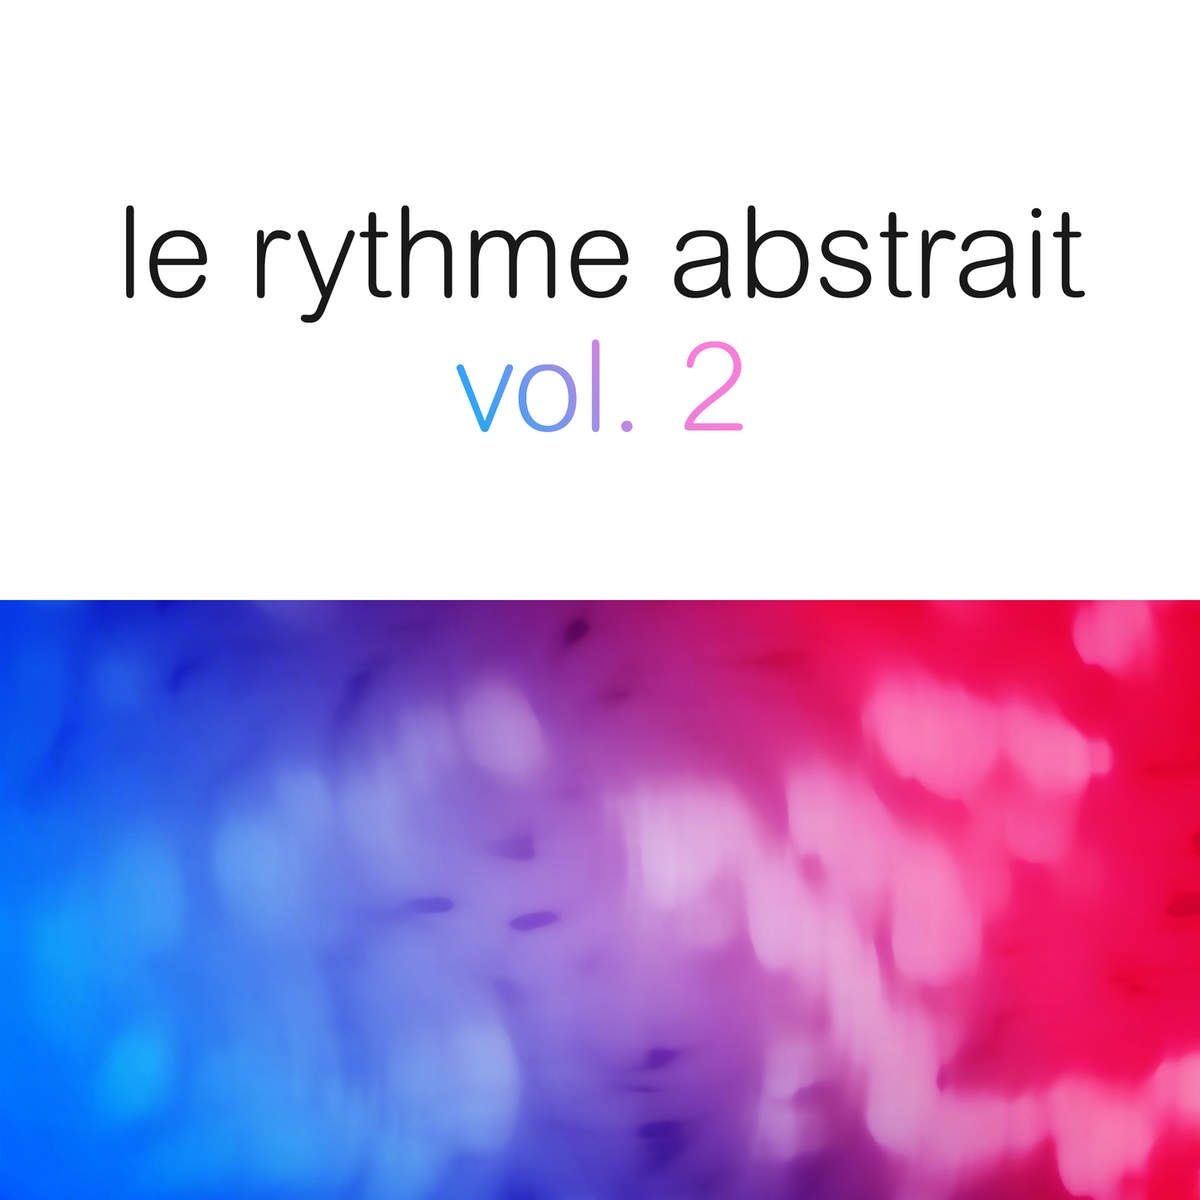 Le rythme abstrait by Rapha l Marionneau, Vol. 2